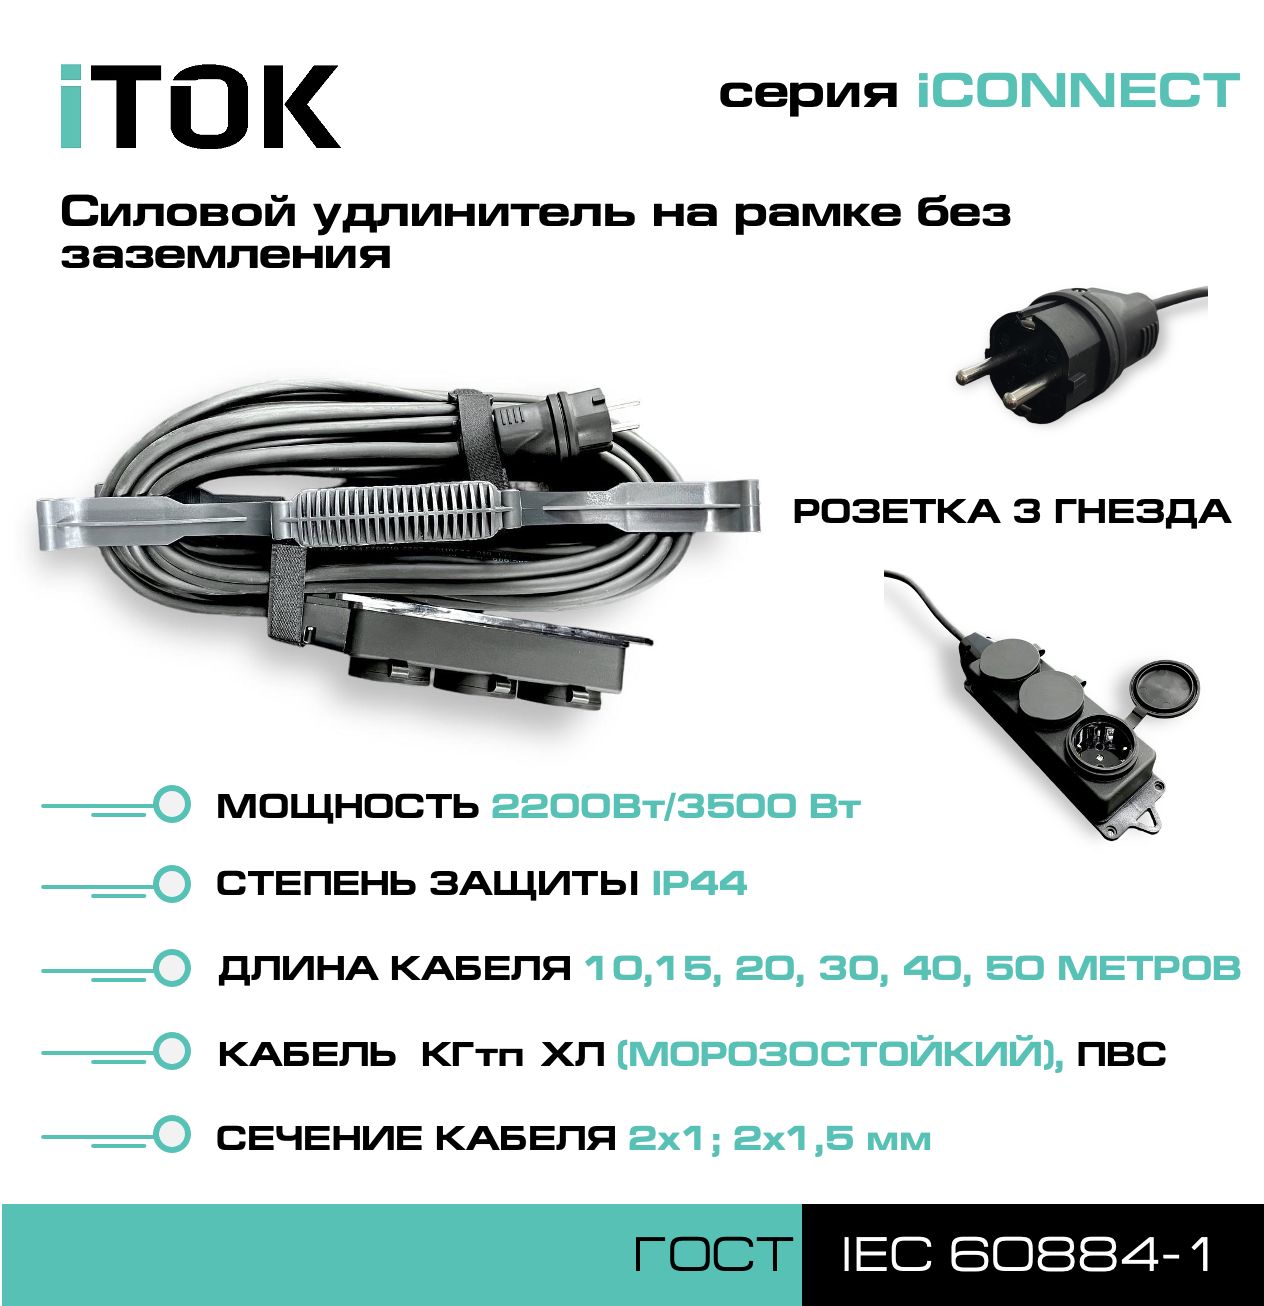 Удлинитель на рамке без земли серии iTOK iCONNECT КГтп-ХЛ 2х1,5 мм 3 гнезда IP44 10 м насадка шнек для земли калибр